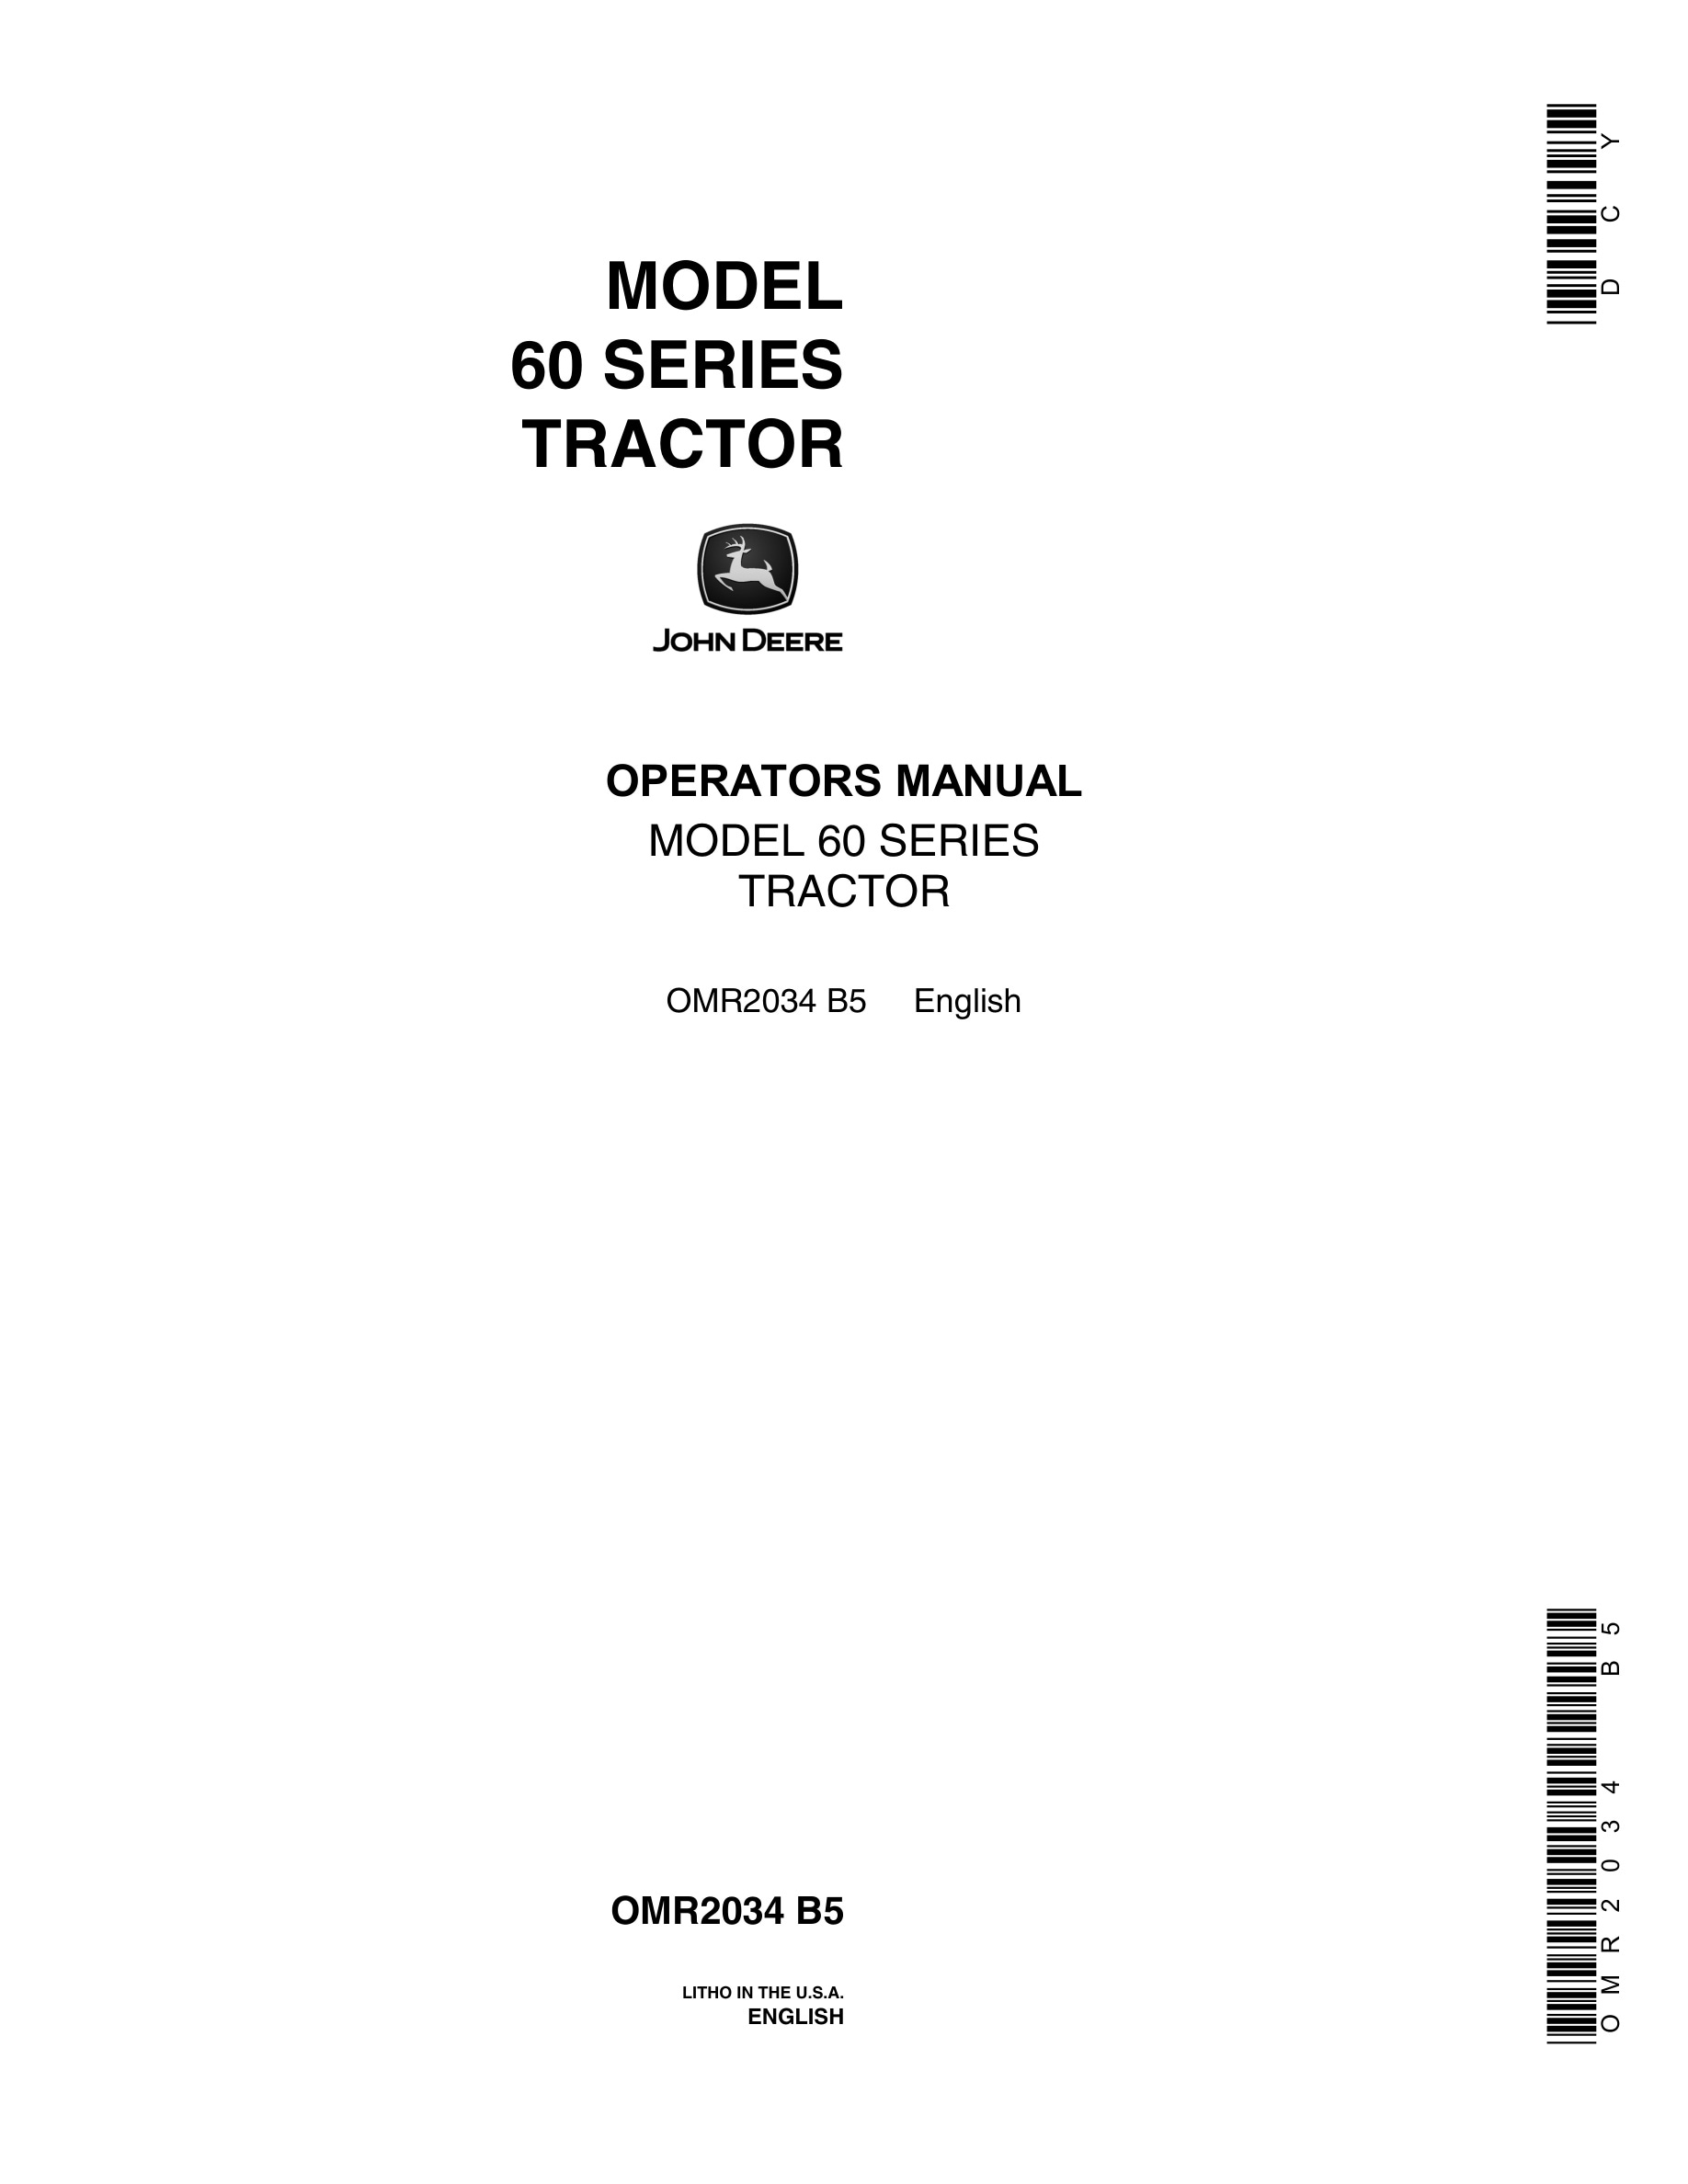 John Deere Model 60 Tractor Operator Manual OMR2034-1